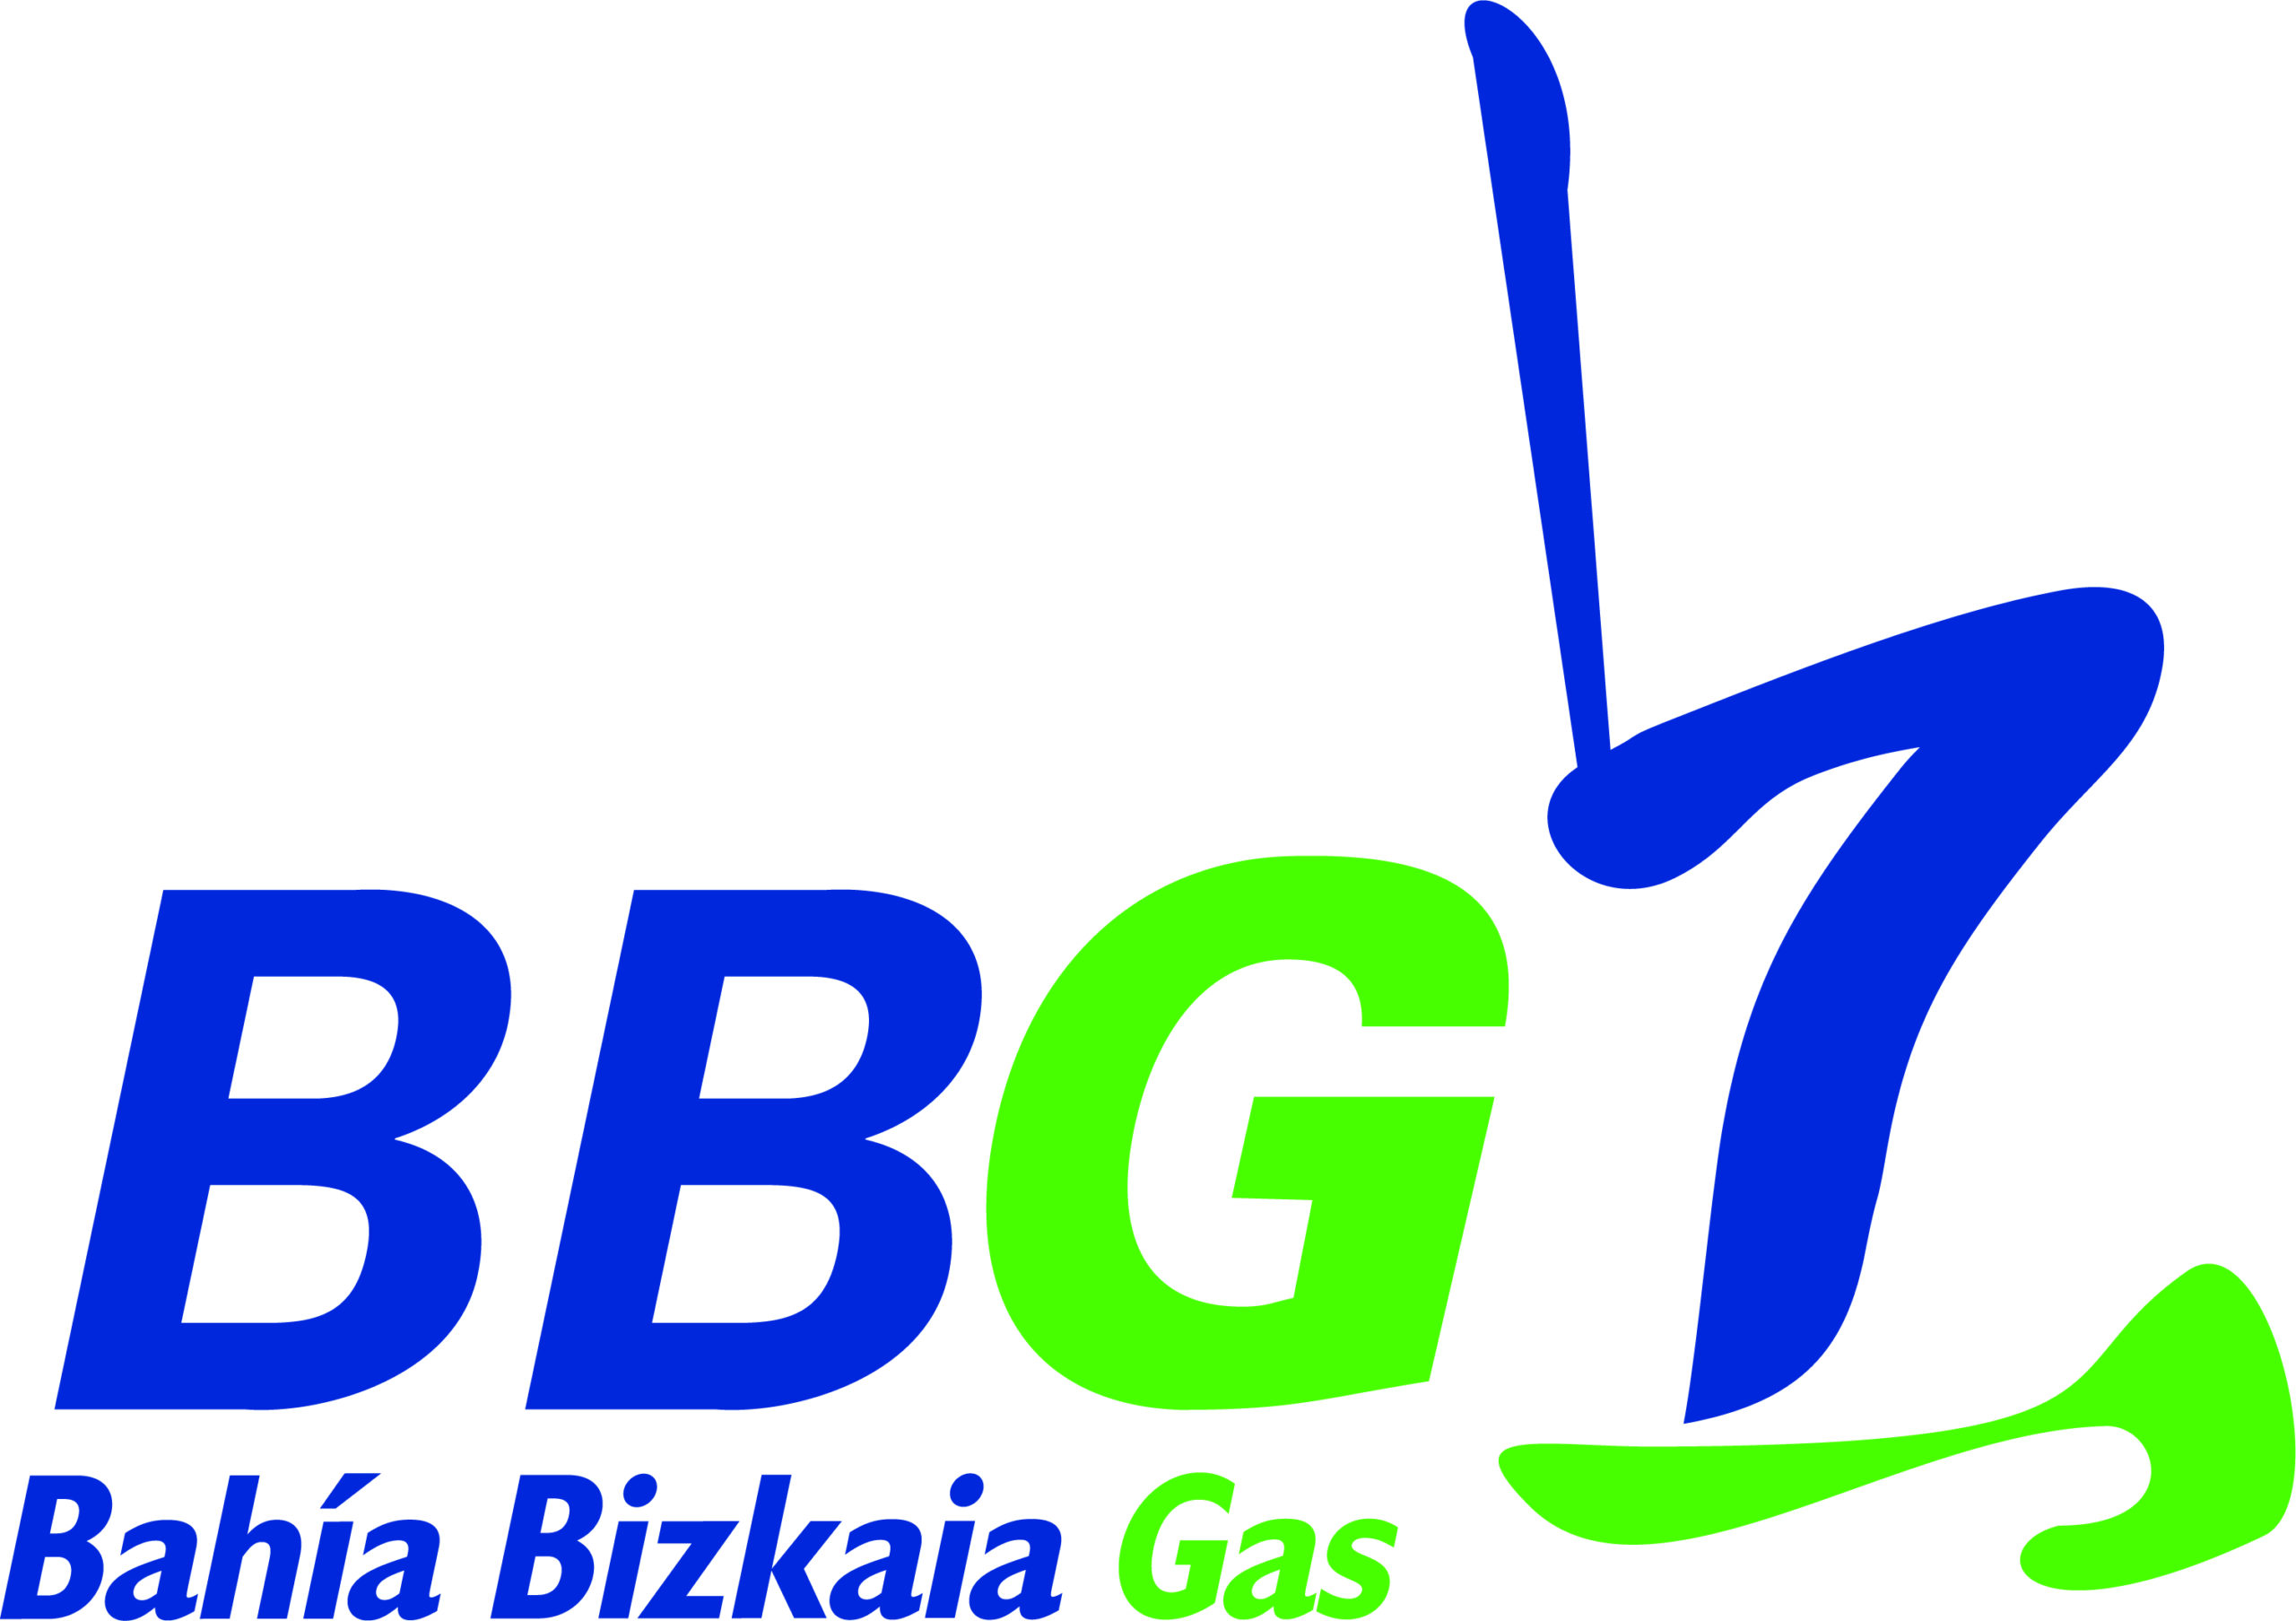 Bahia de Bizkaia Gas (falta imagen)